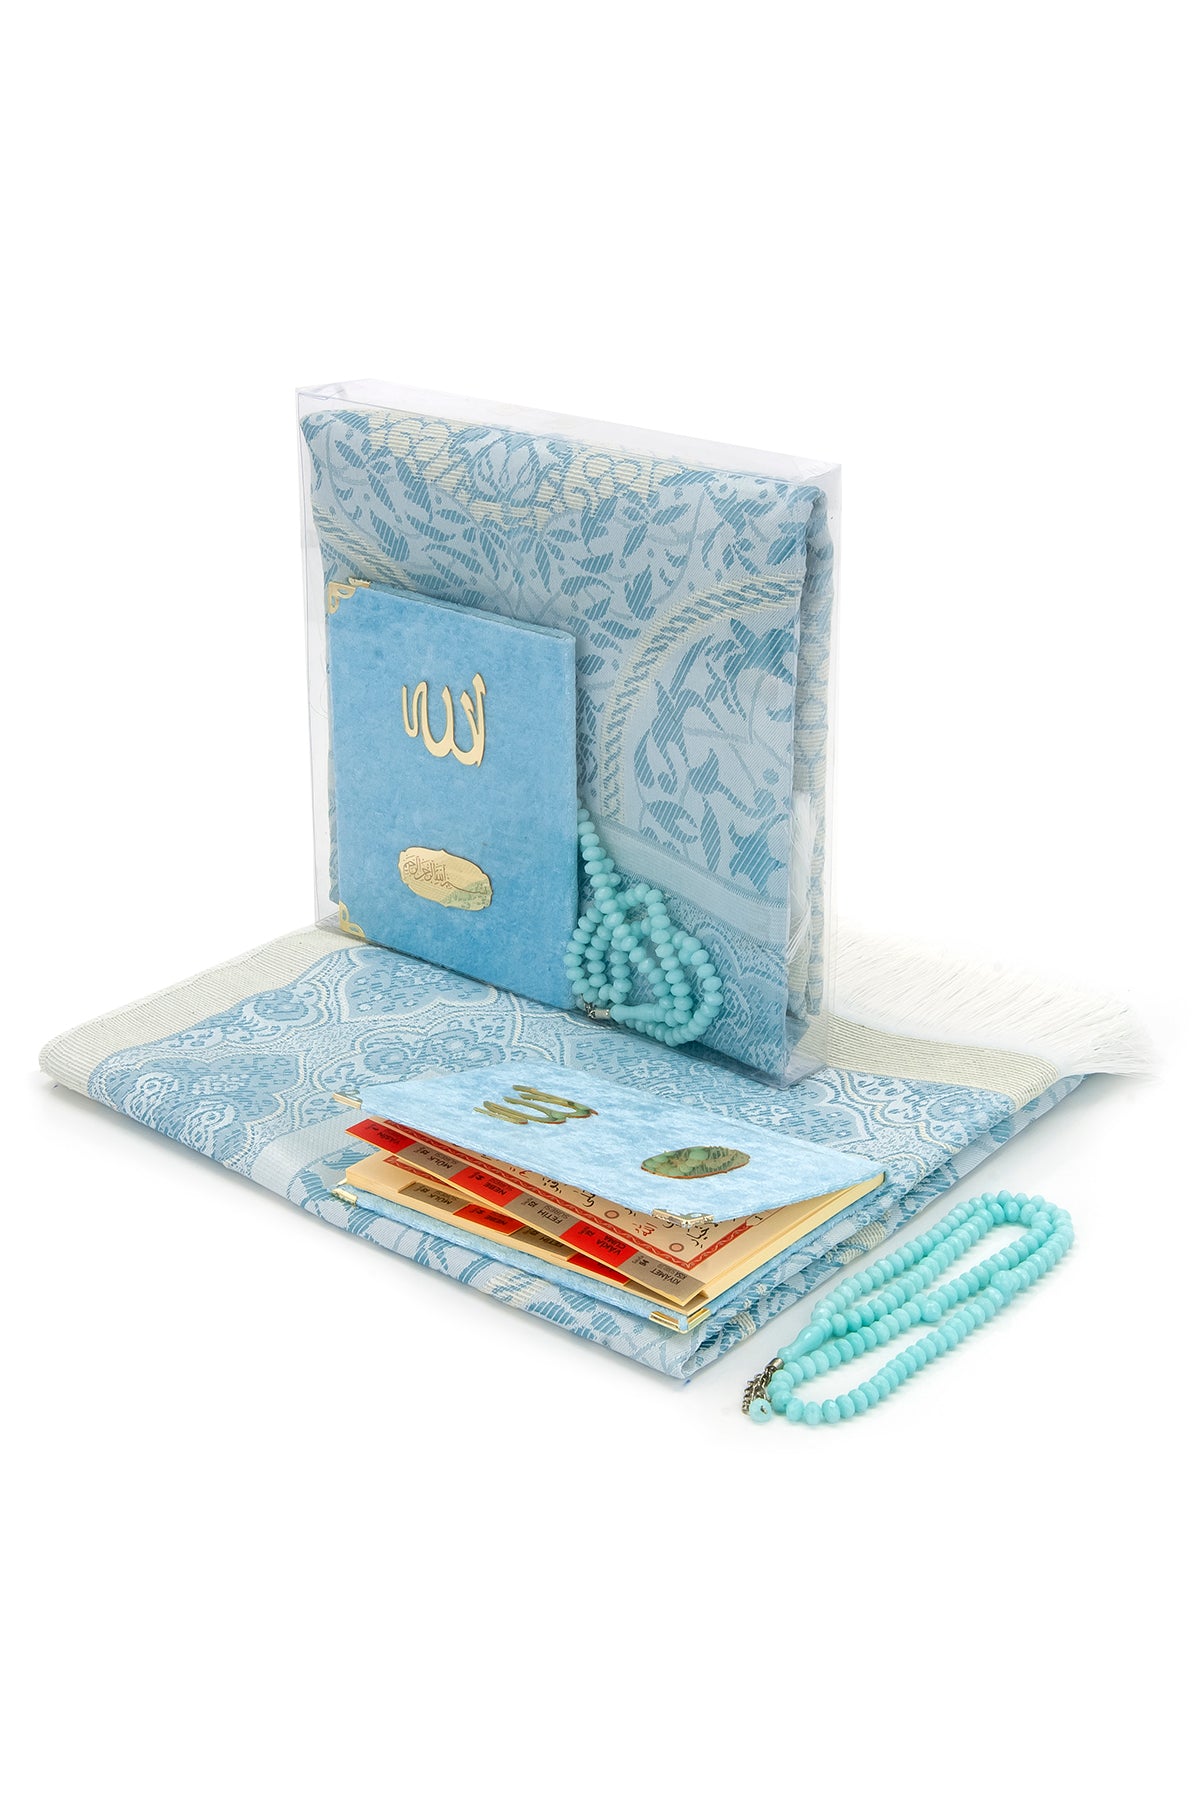 Personalisierte islamische Tasbeeh Hochzeitsbevorzugung, islamisches  Hochzeitsgeschenk, muslimische Gebetskette, muslimische Geschenke, islamische  Geschenke, benutzerdefinierte Tasbih in Boxen - .de